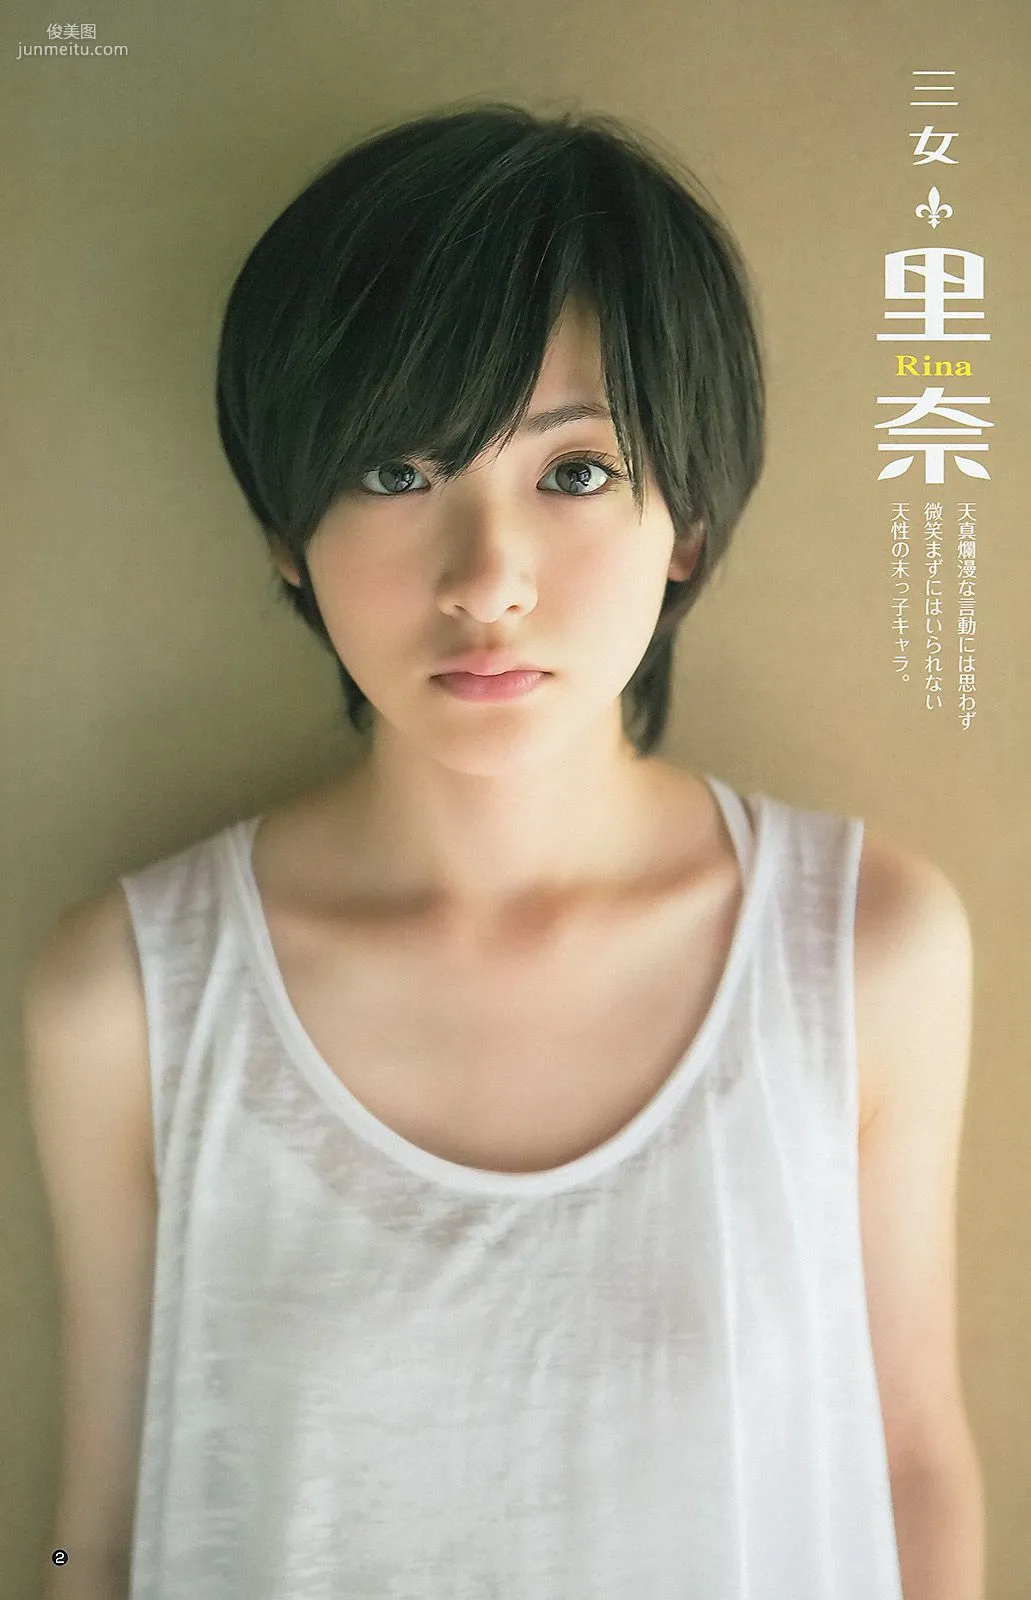 大島優子 乃木坂46 AKB48 ウェイティングガールズ [Weekly Young Jump] 2012年No.40 写真杂志10